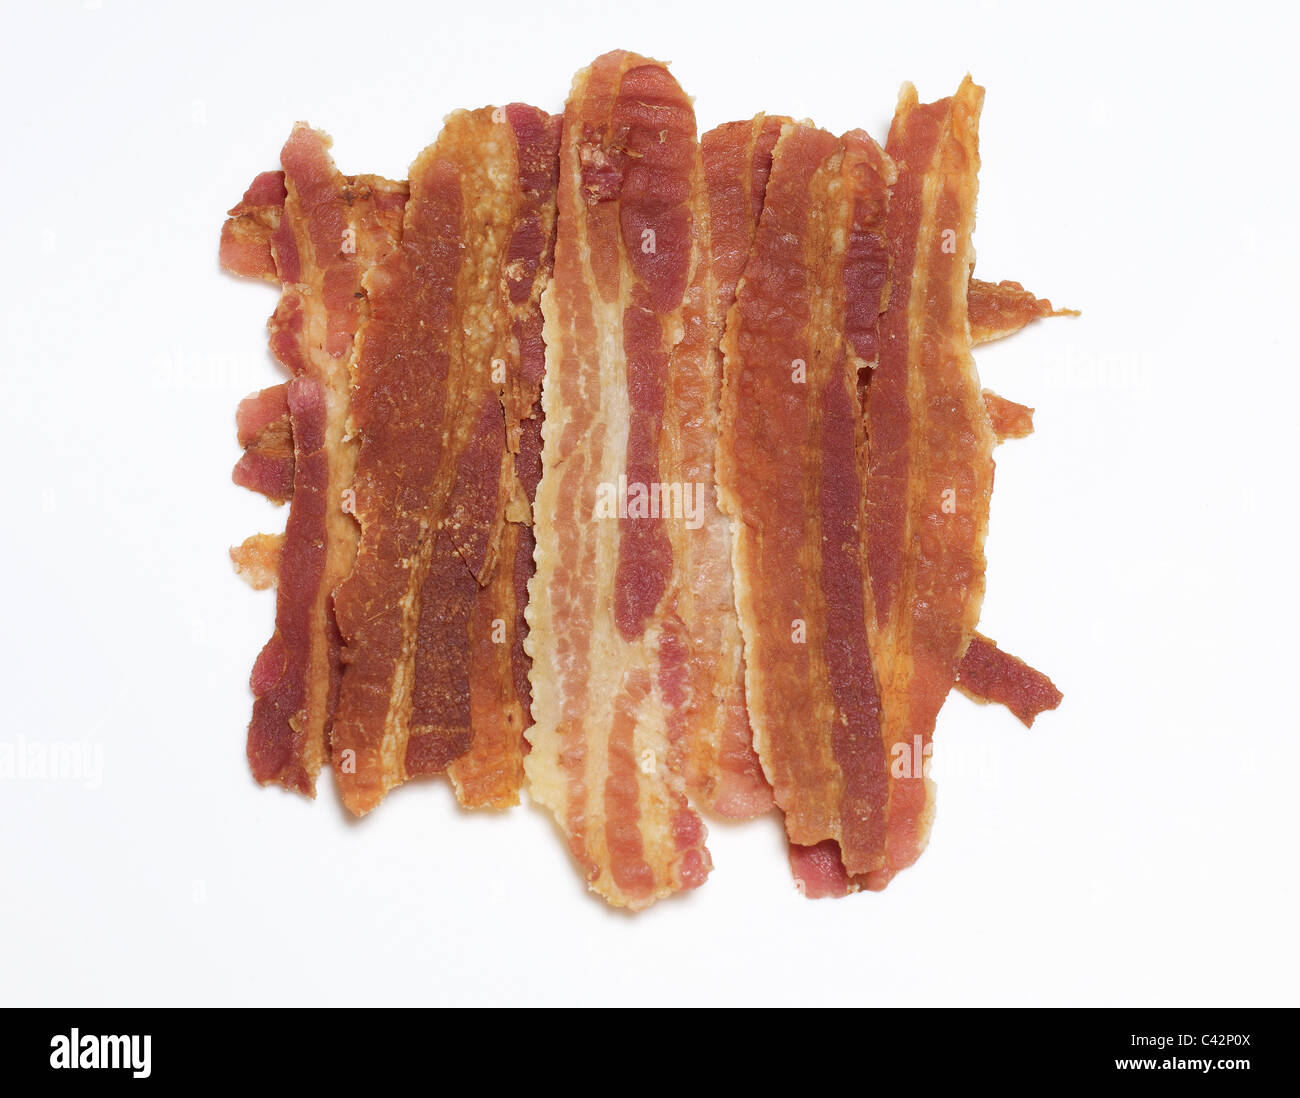 Bacon rashers Stock Photo